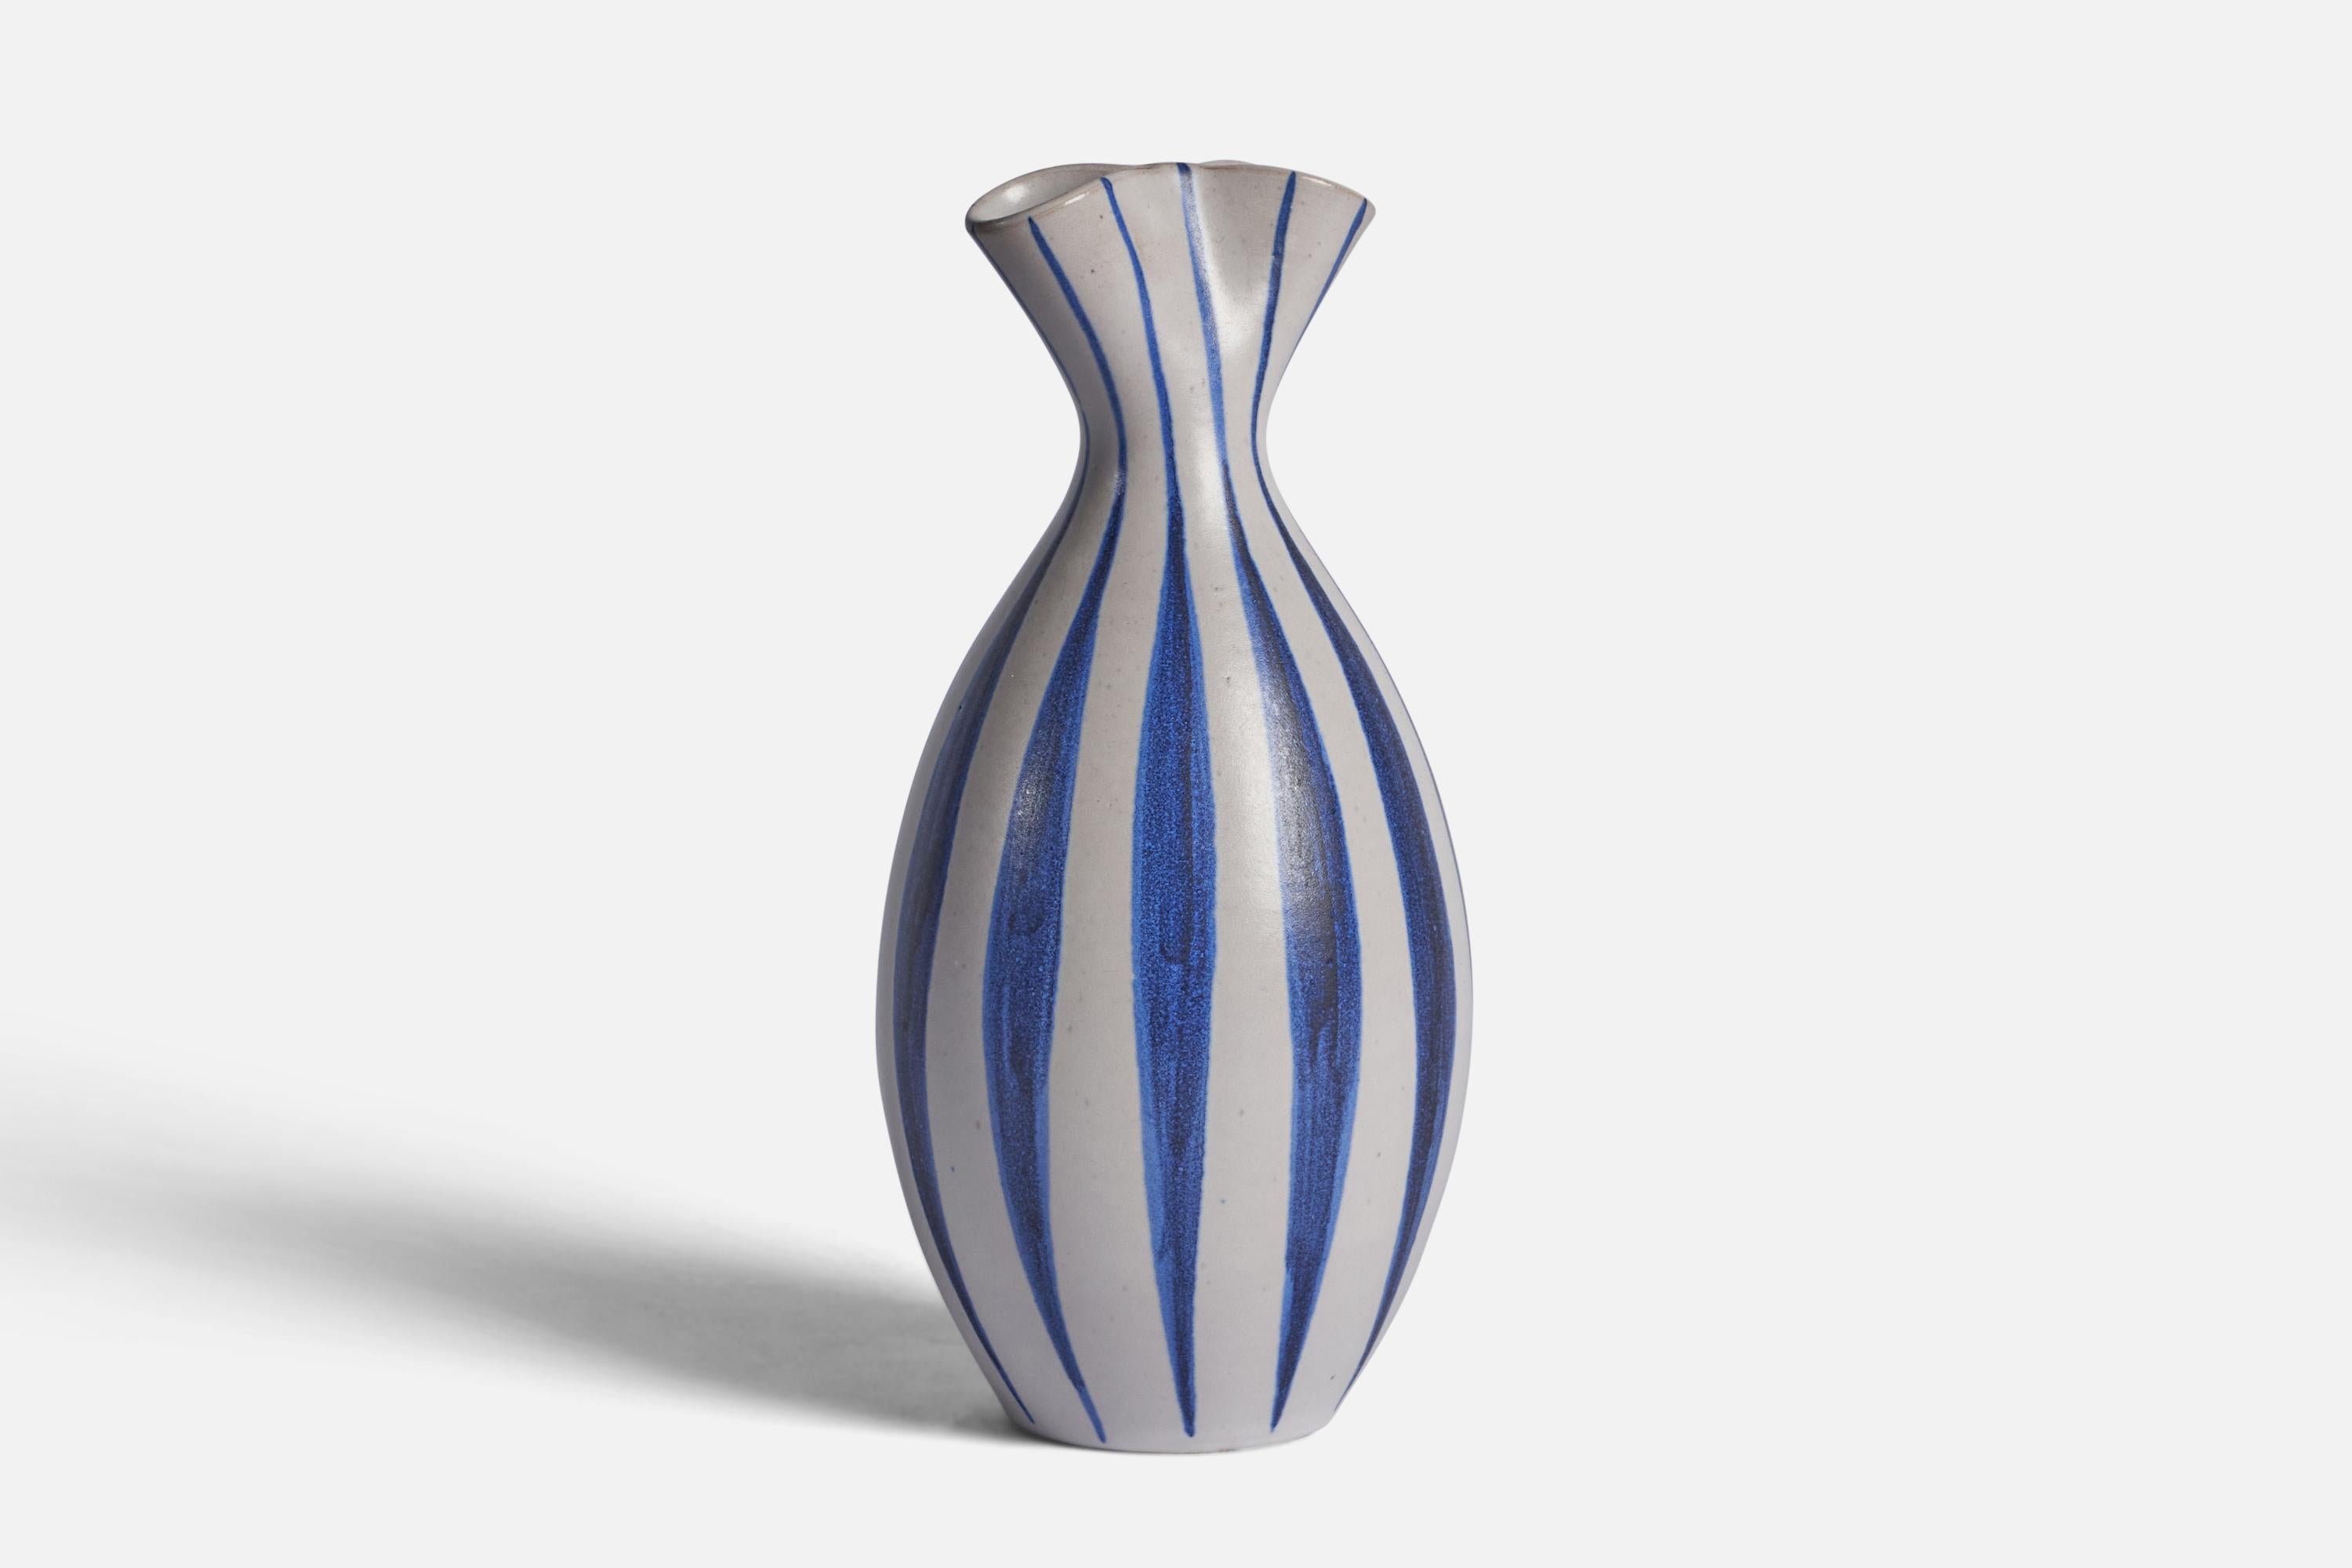 Vase en grès blanc et bleu peint à la main, conçu par Mette Doller et produit par Andersson & Johansson, Höganäs, Suède, années 1950.